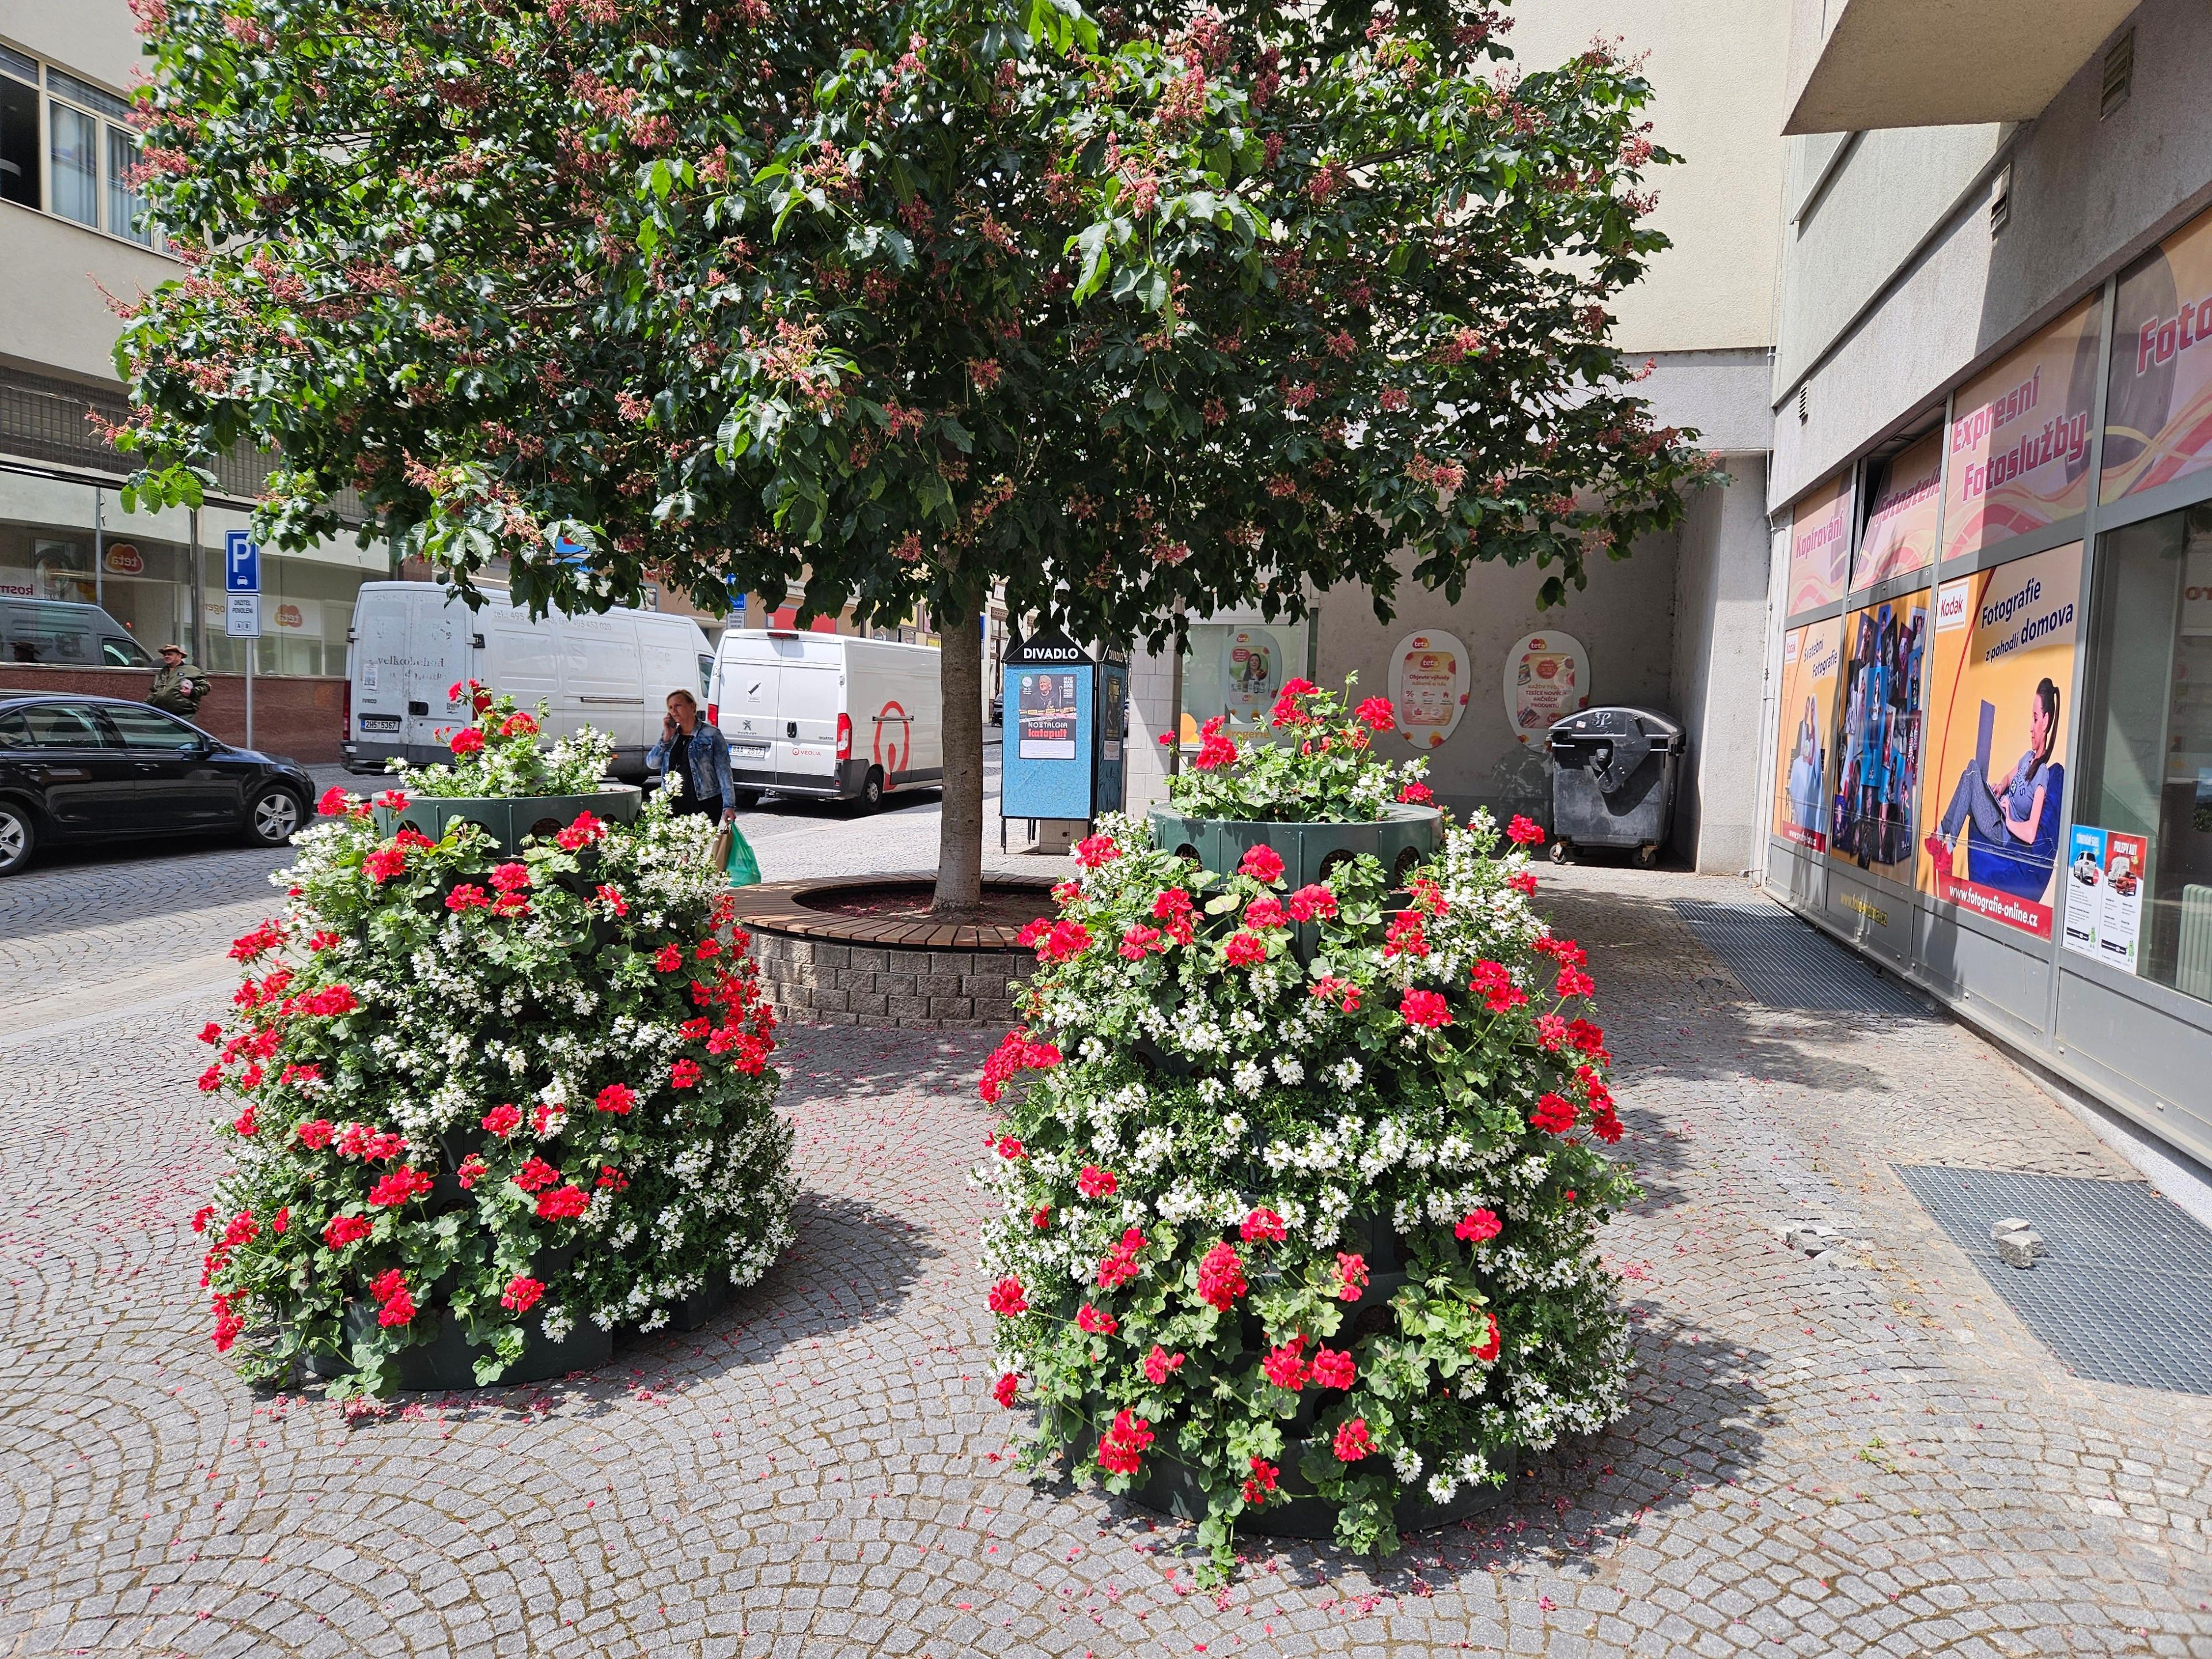 Rostliny pro květinovou výzdobu přijely do Kolína z Regensburgu